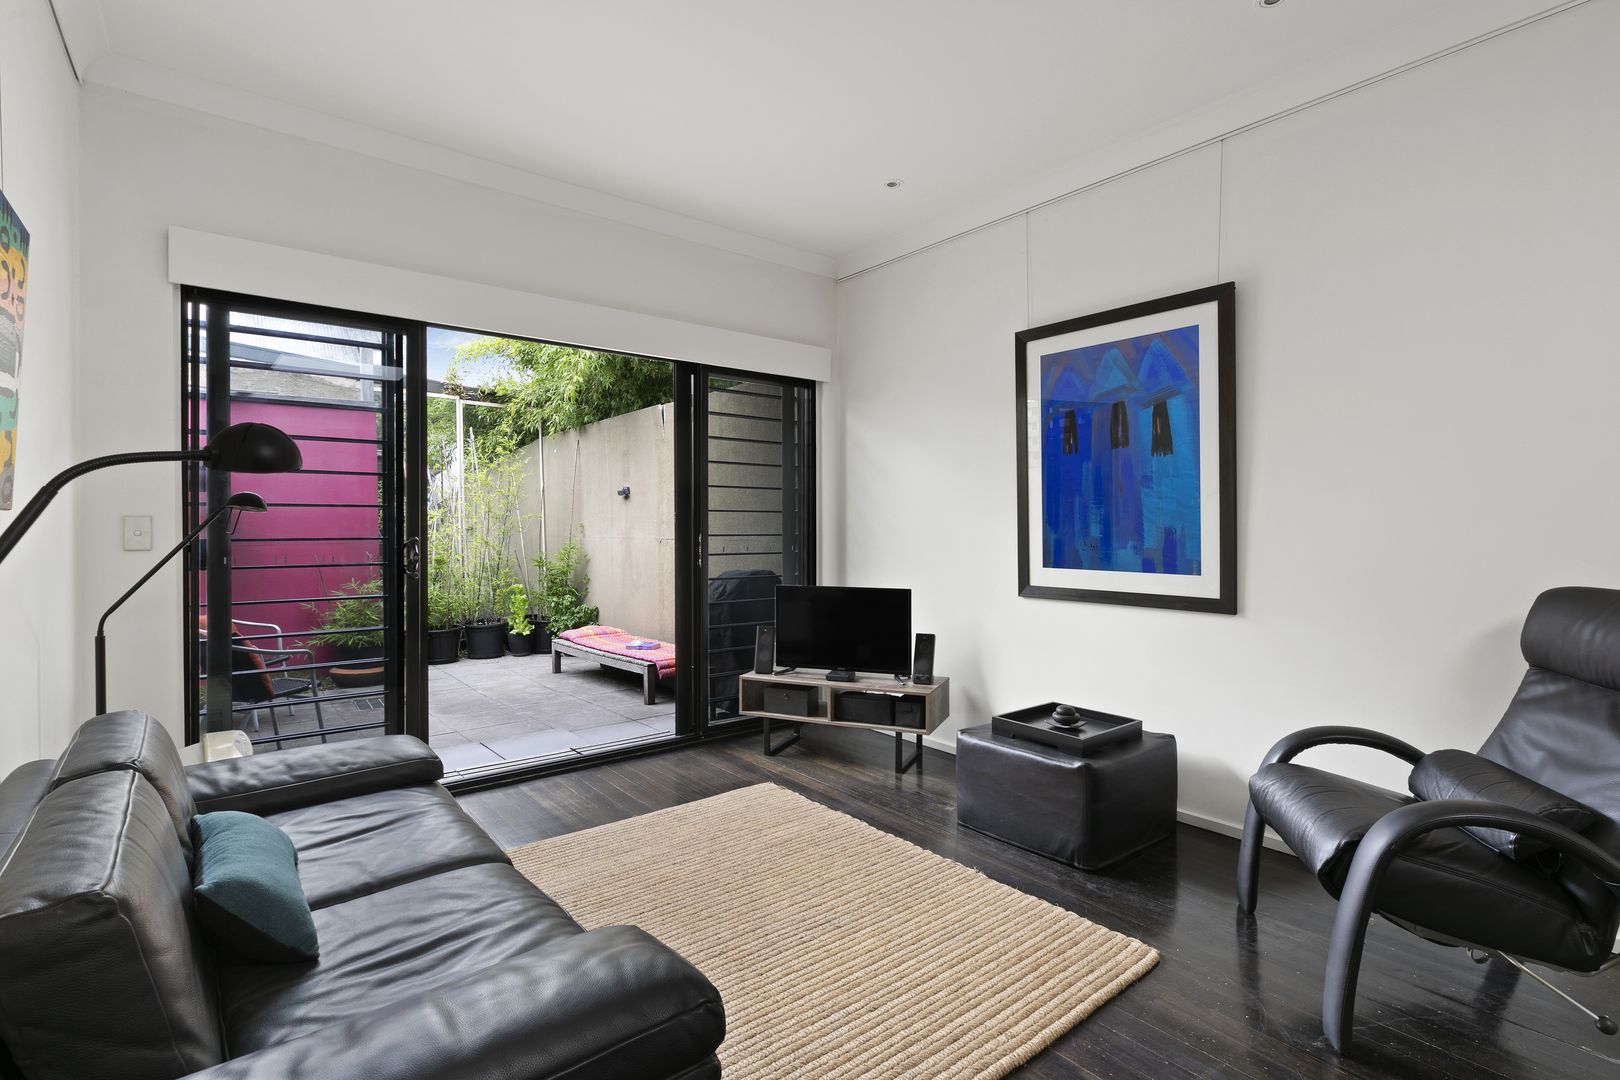 2 bedrooms House in 62 Alexander Street ALEXANDRIA NSW, 2015